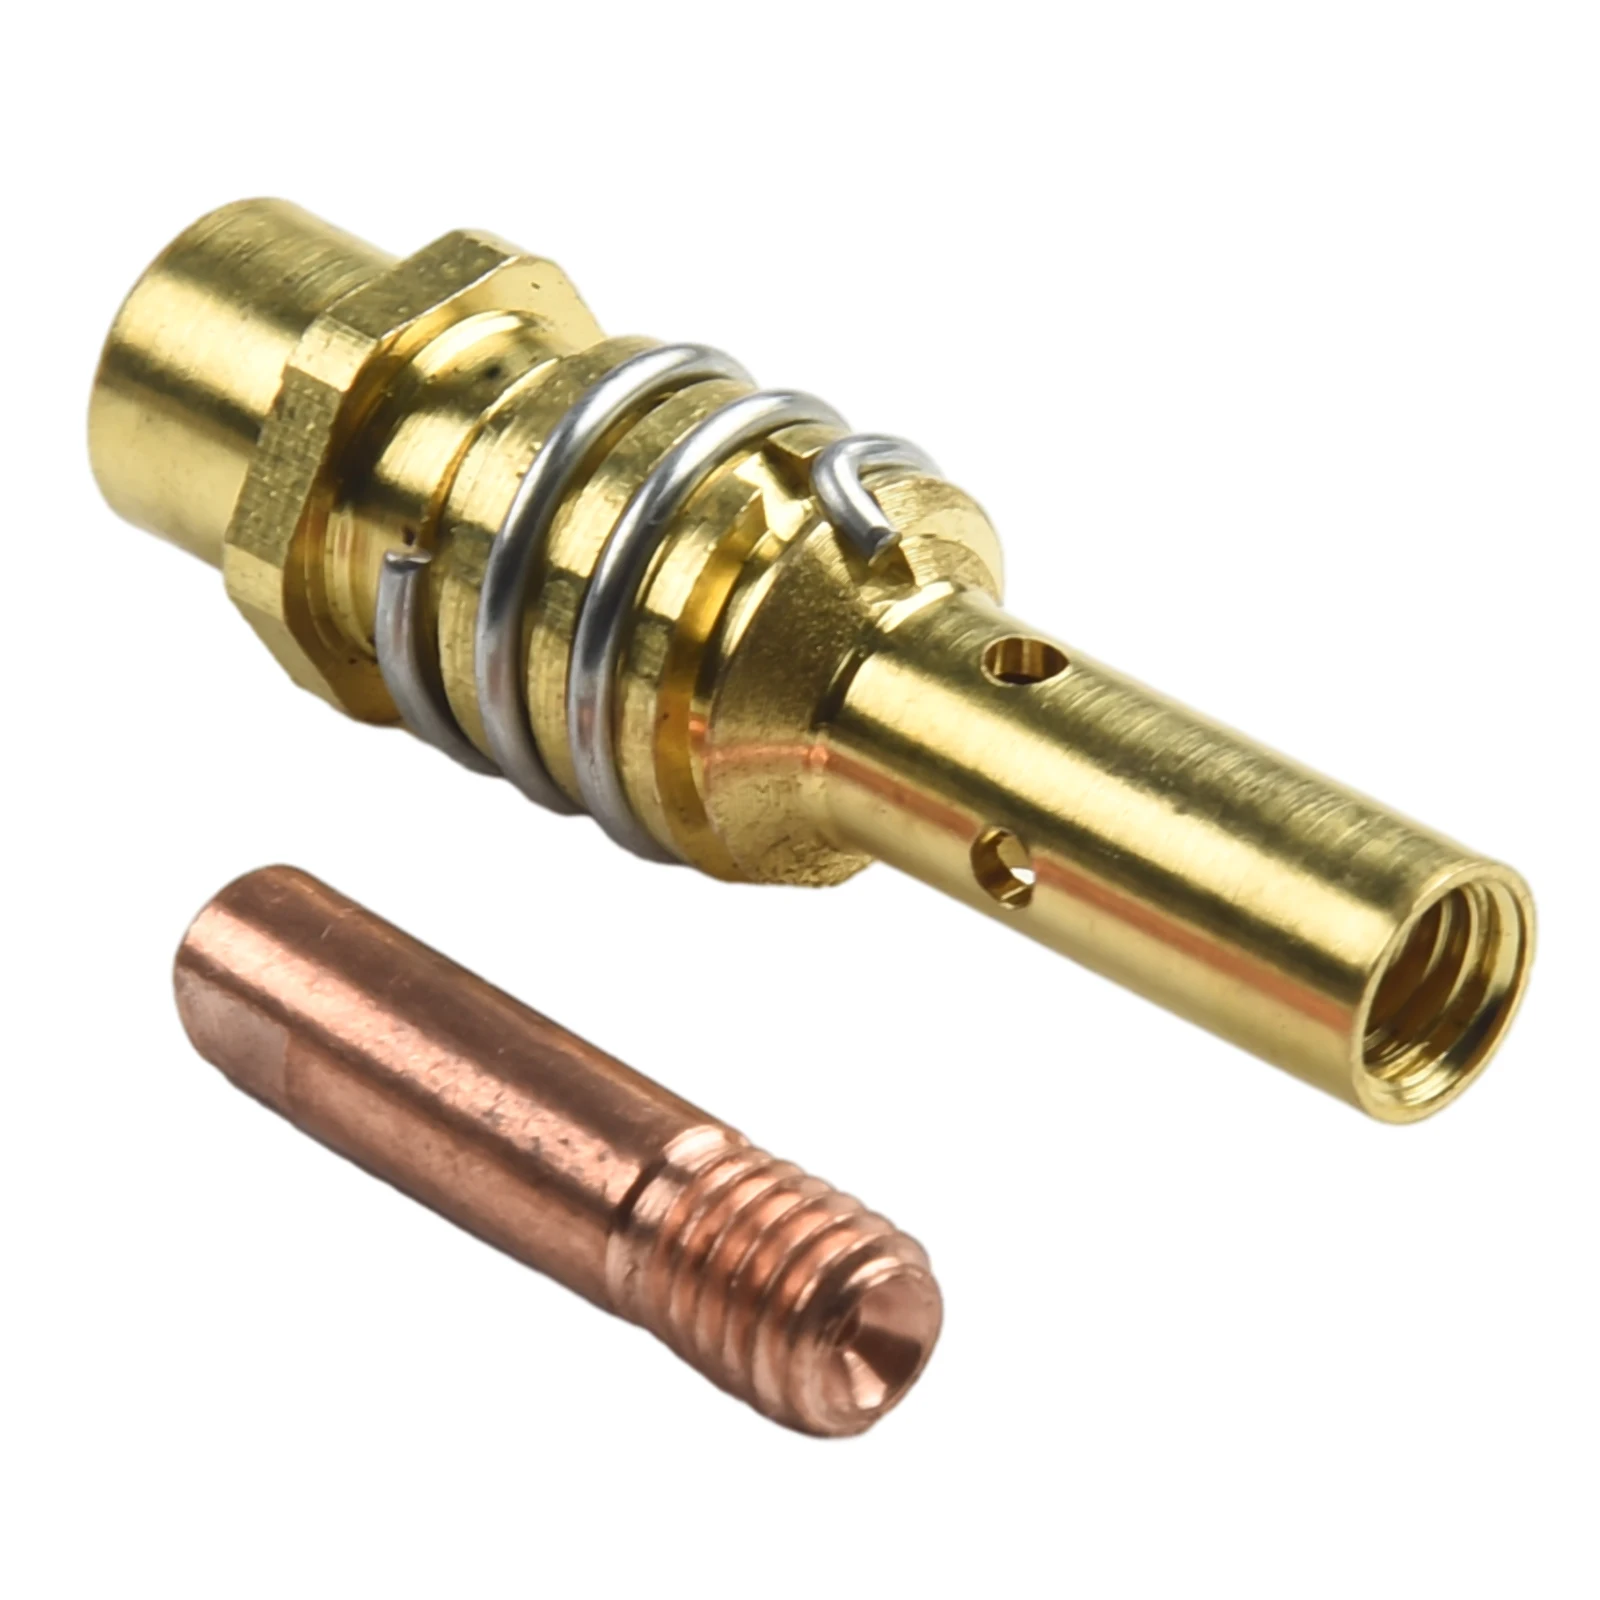 3pcs Binzel 15AK Torch Welding Accessories Nozzles Contact Tips For MIG Welder Herramientas Multimeter Woodworking Soldering